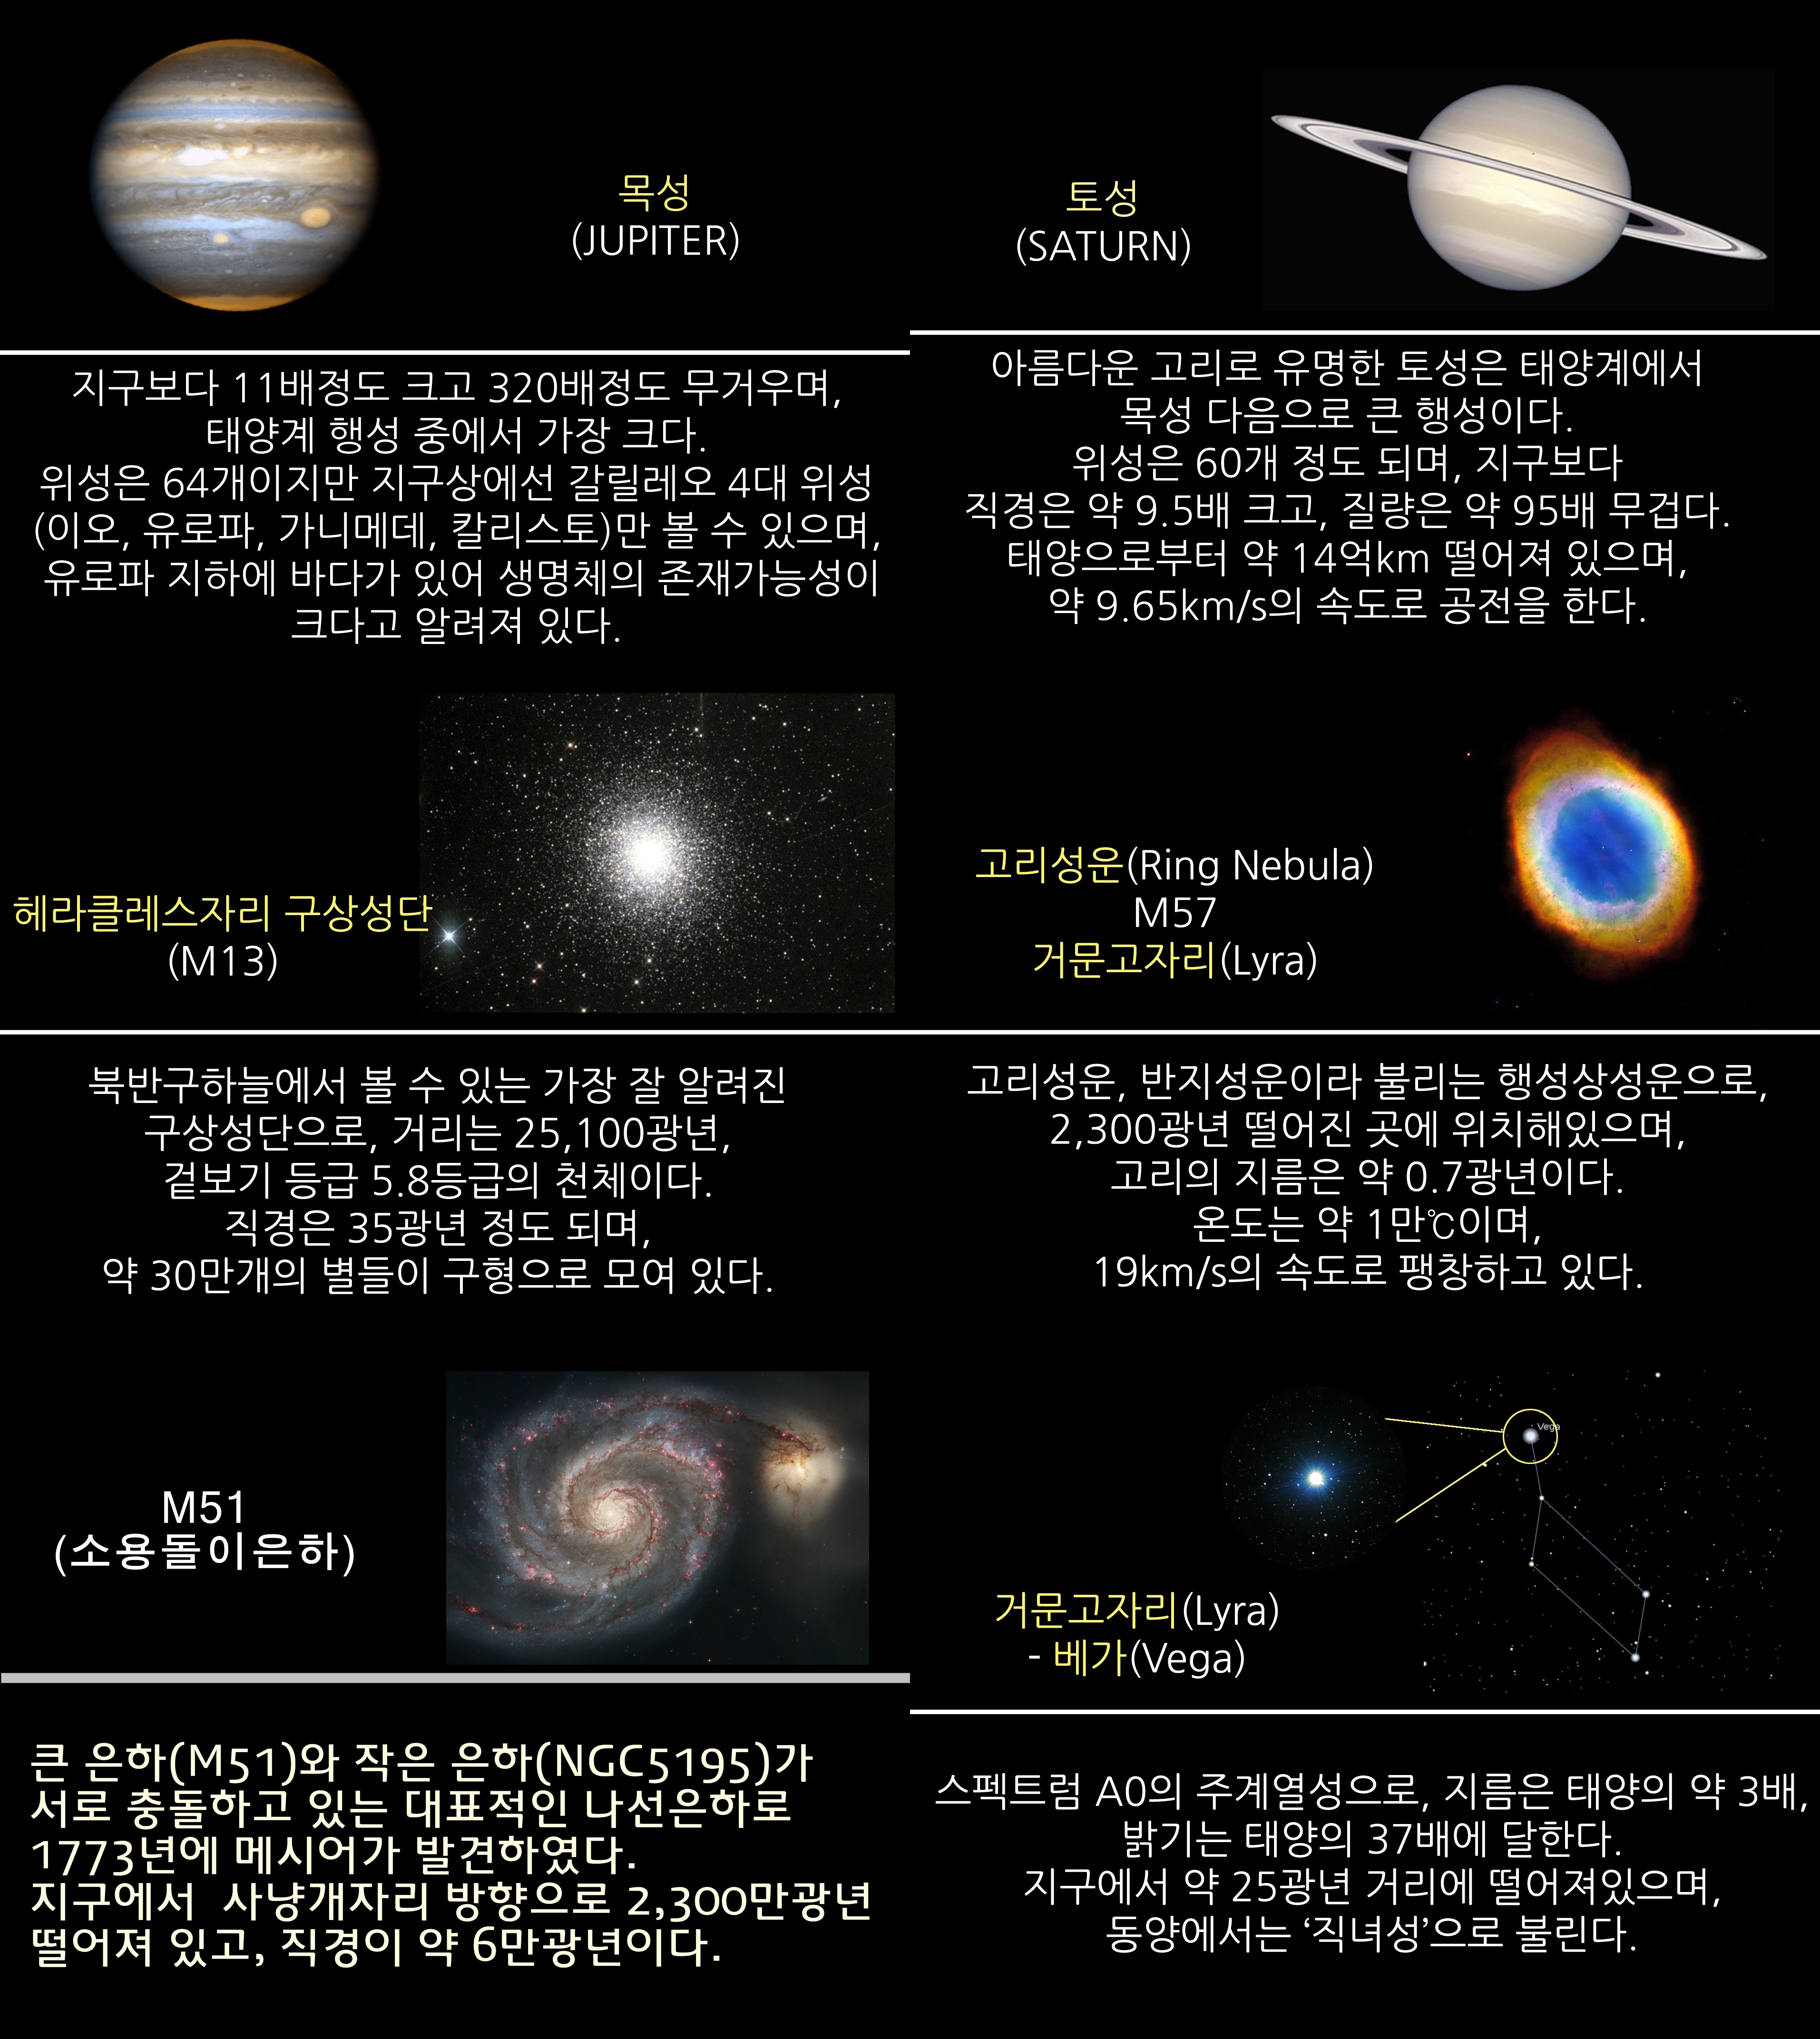 2018년 7월 주요 천체관측 대상